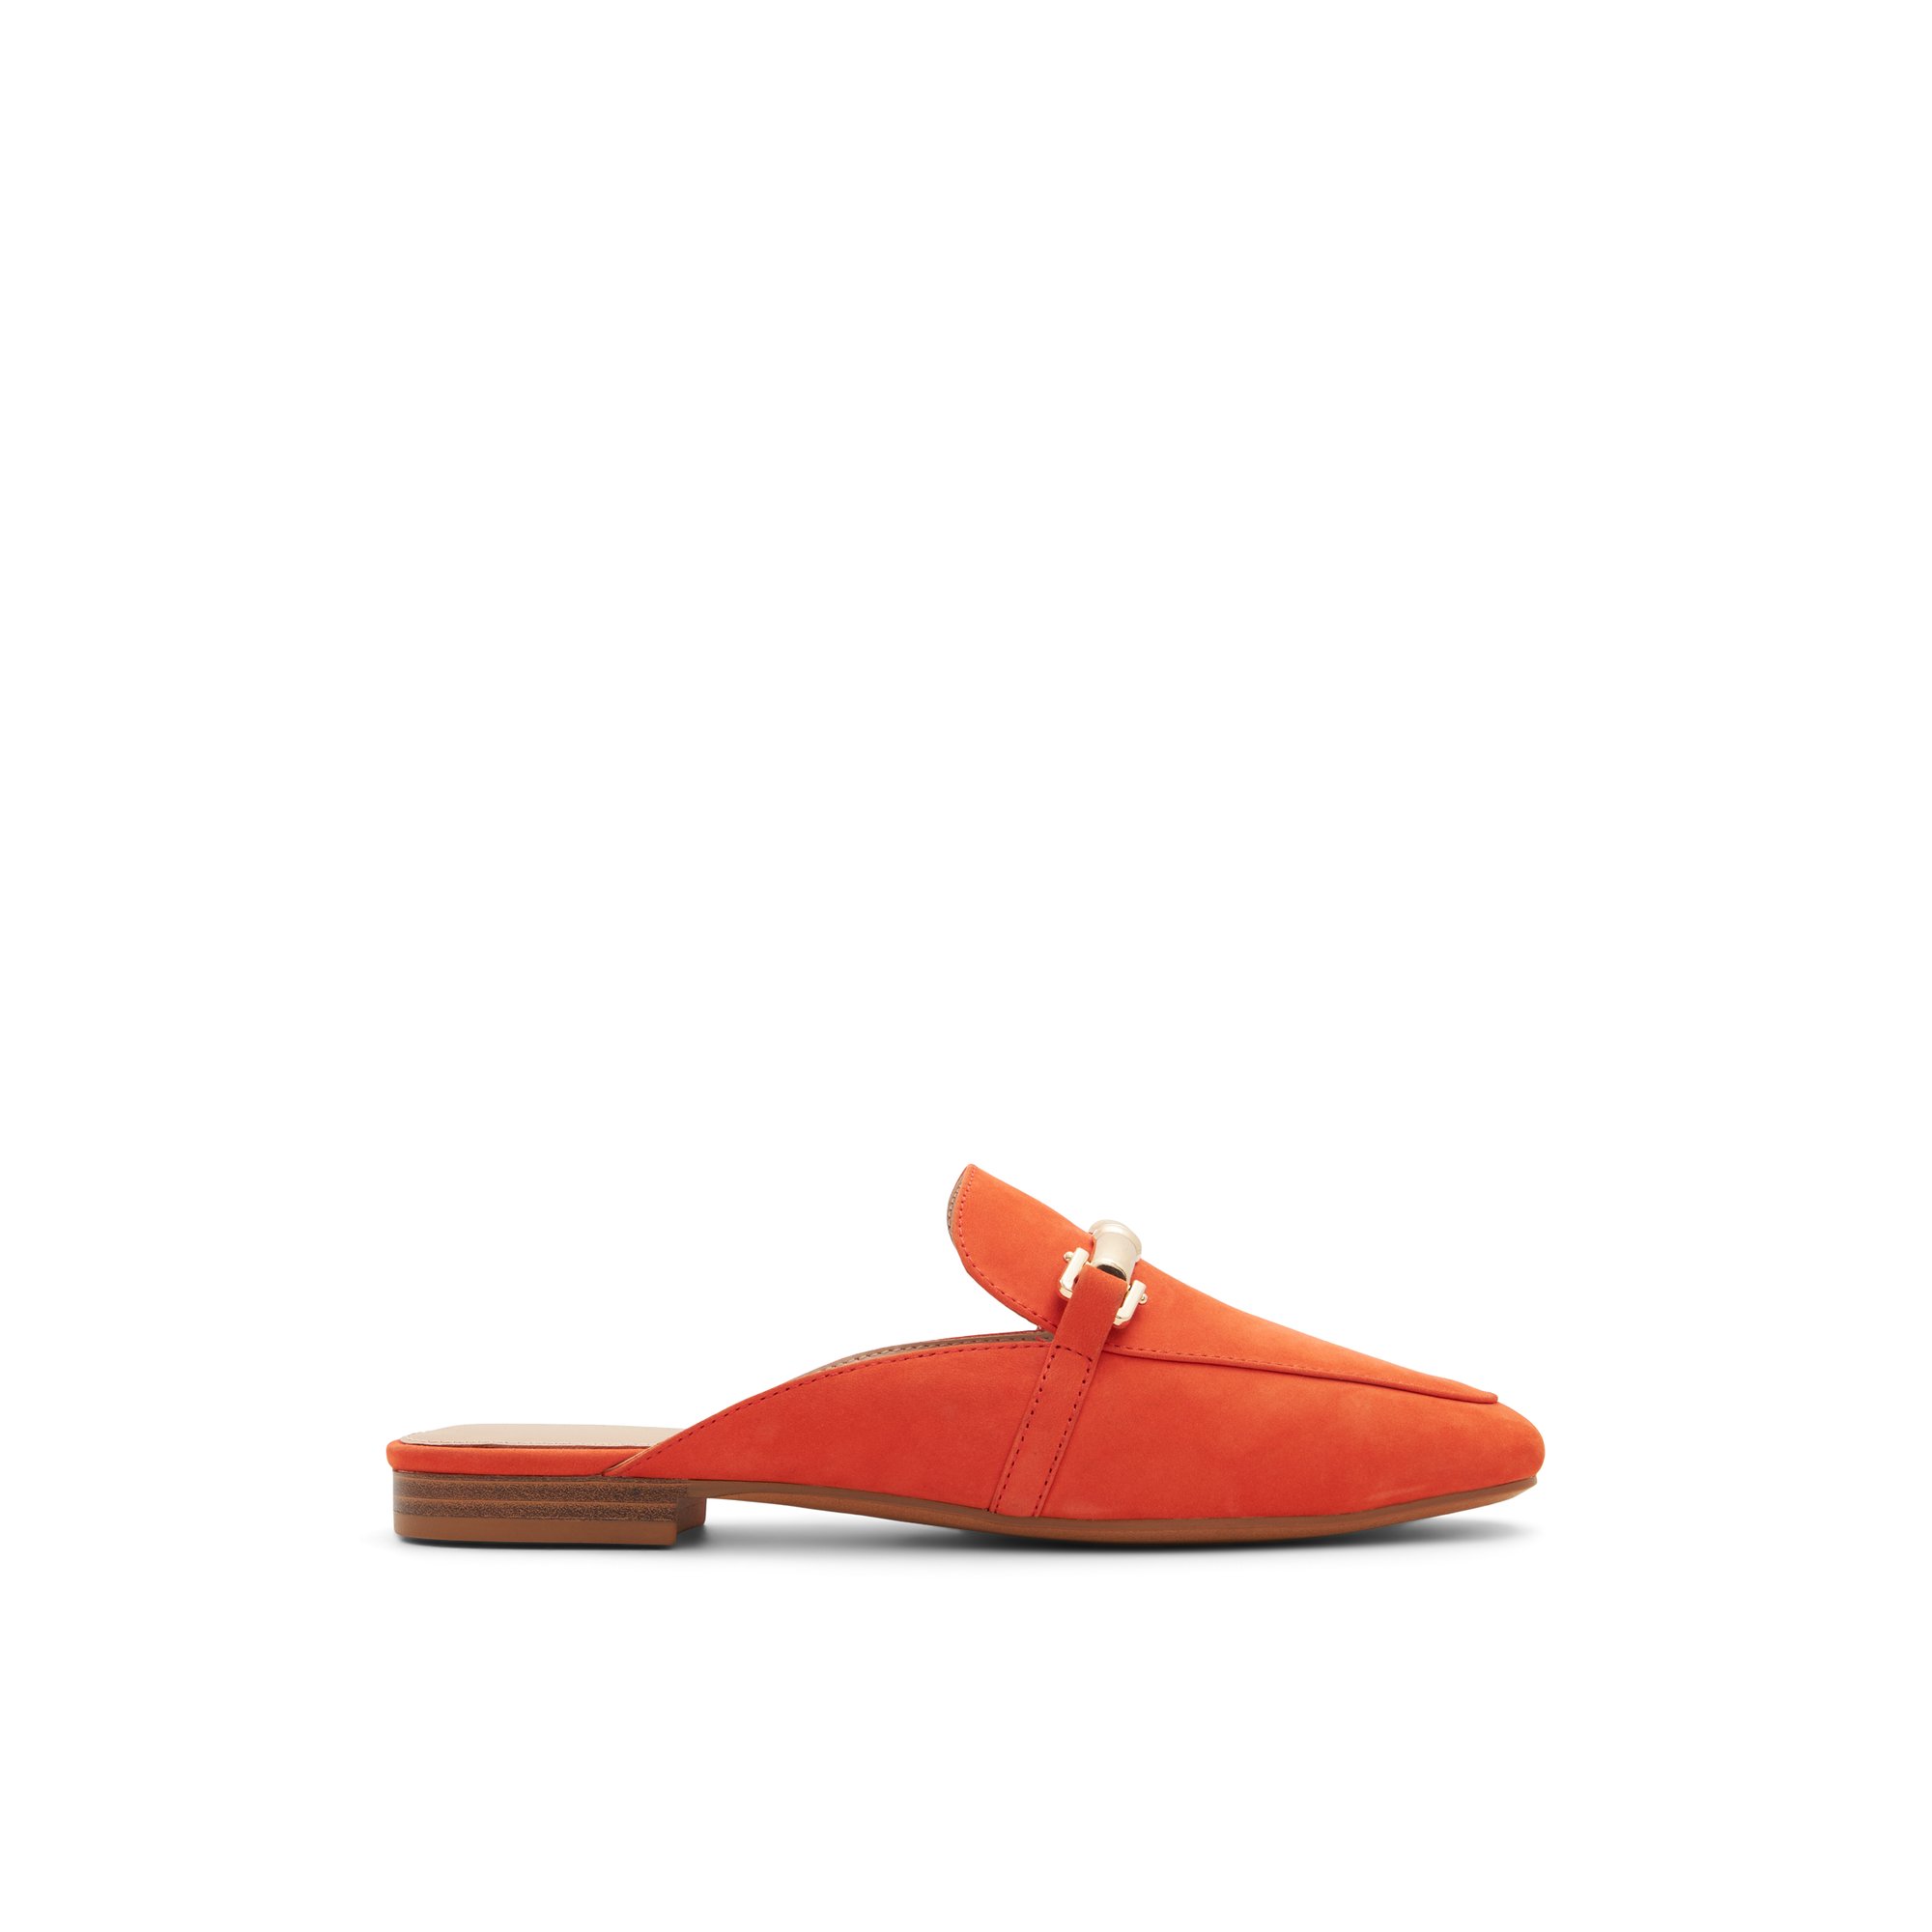 ALDO Boski - Final Sale For Women - Orange